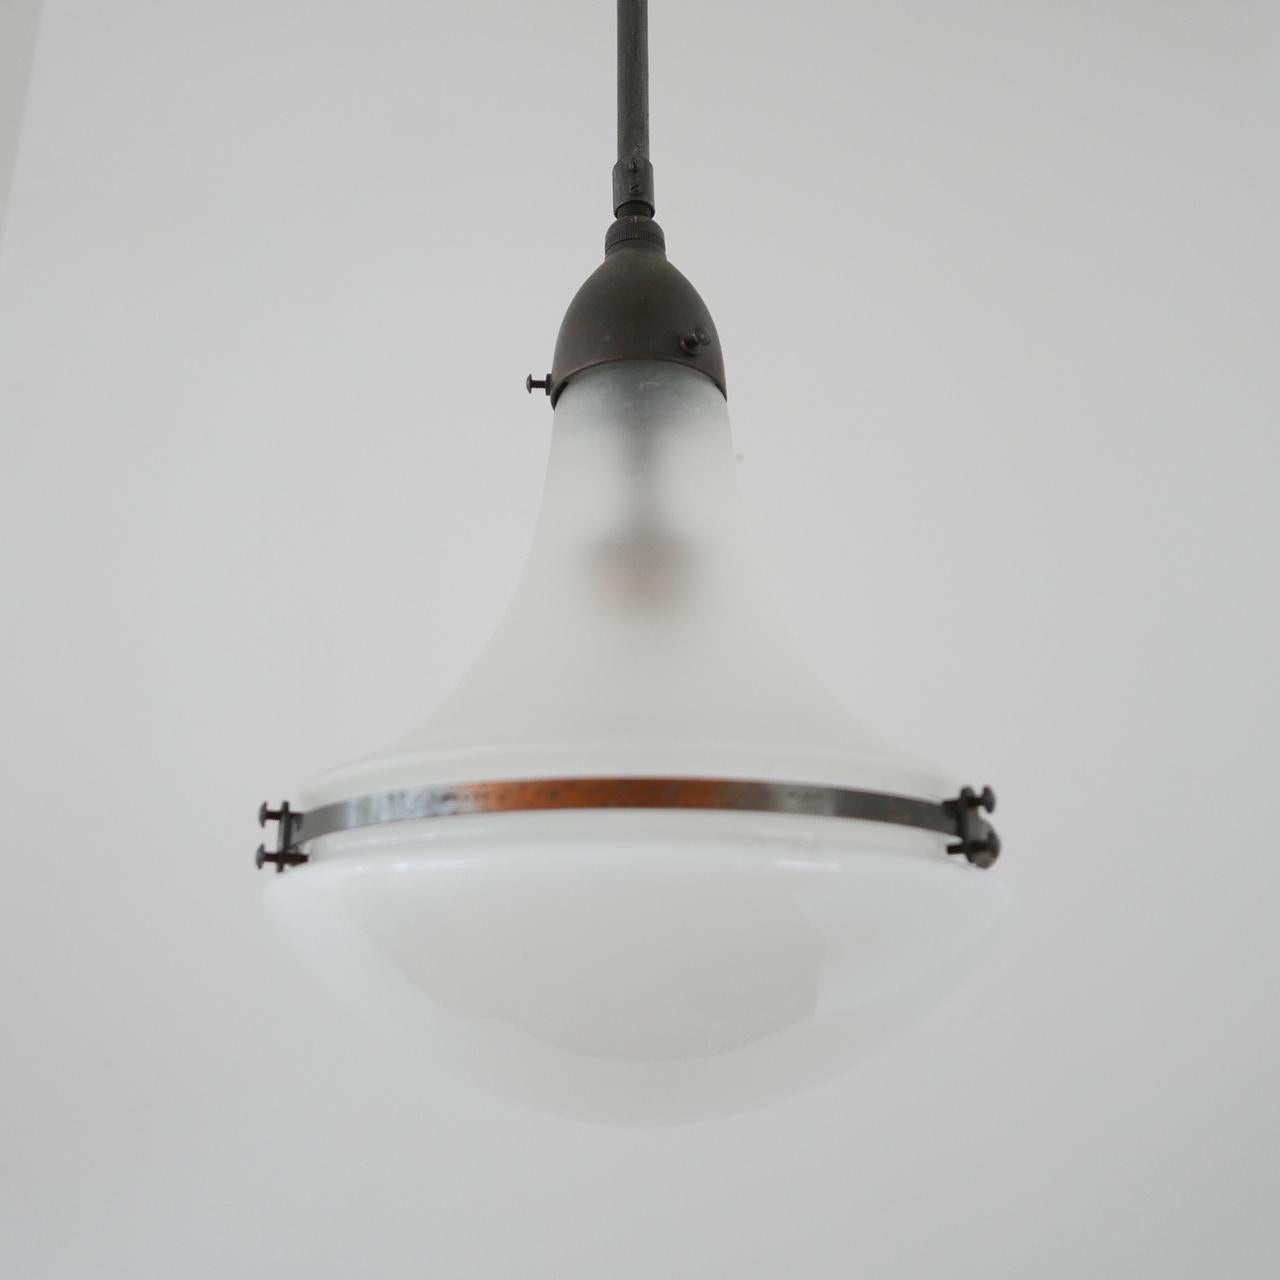 German Peter Behrens Bauhaus Pendant Lamp